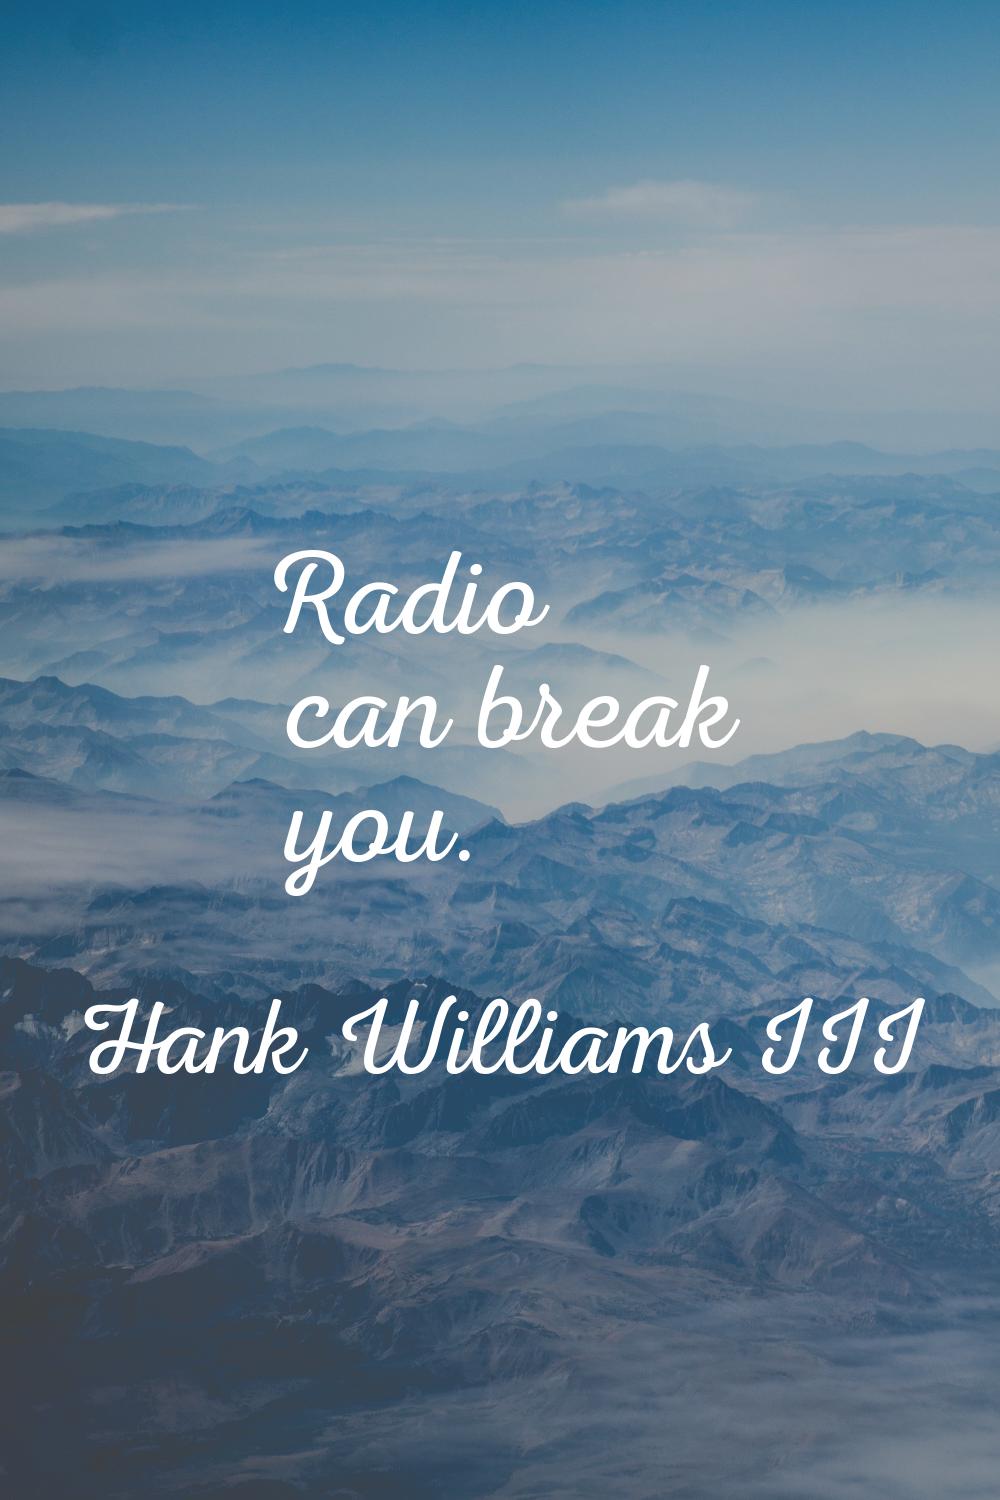 Radio can break you.